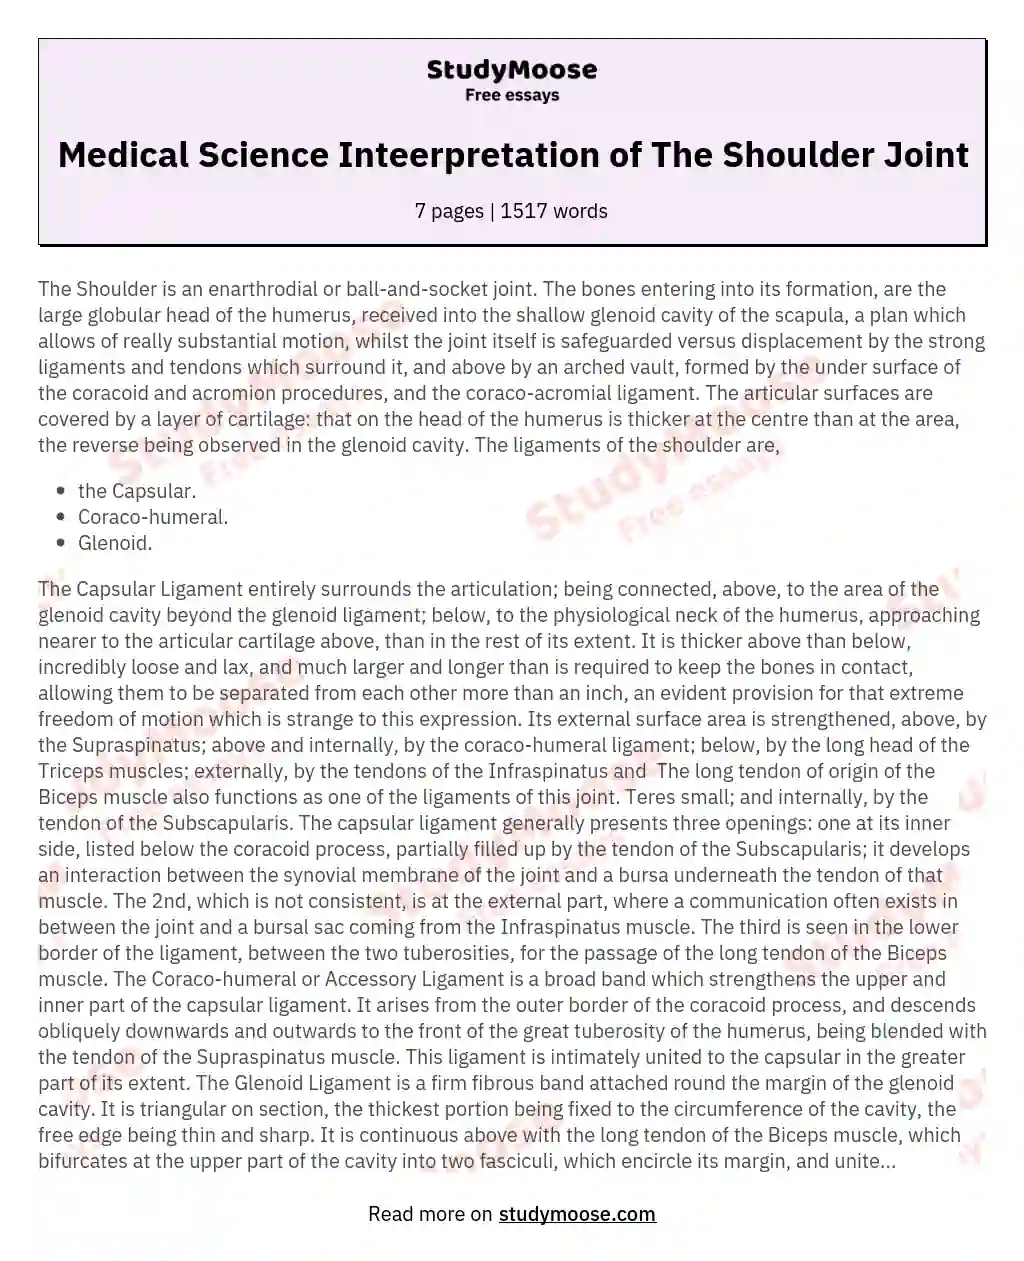 Medical Science Inteerpretation of The Shoulder Joint essay